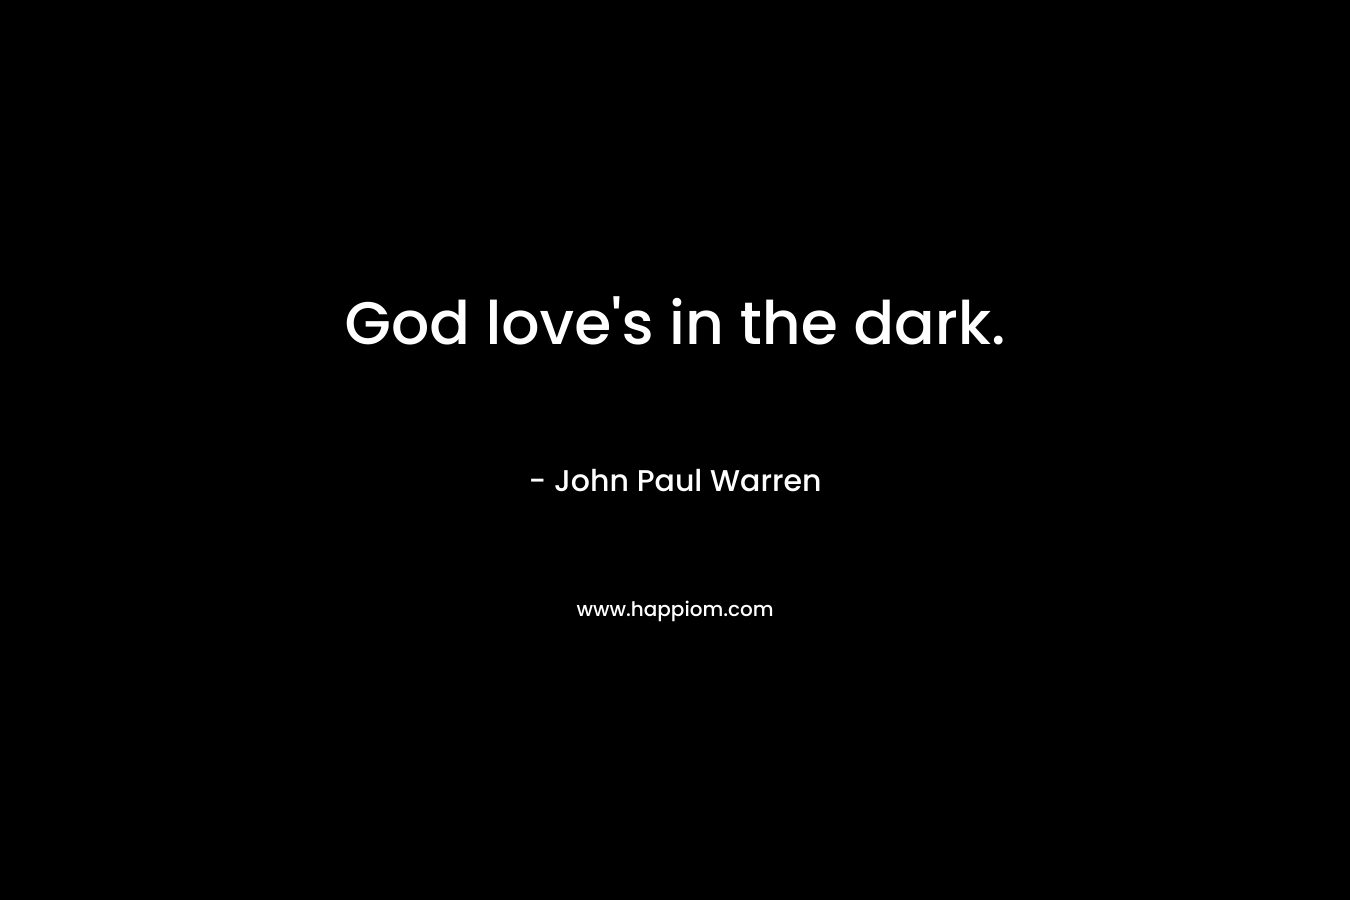 God love's in the dark.